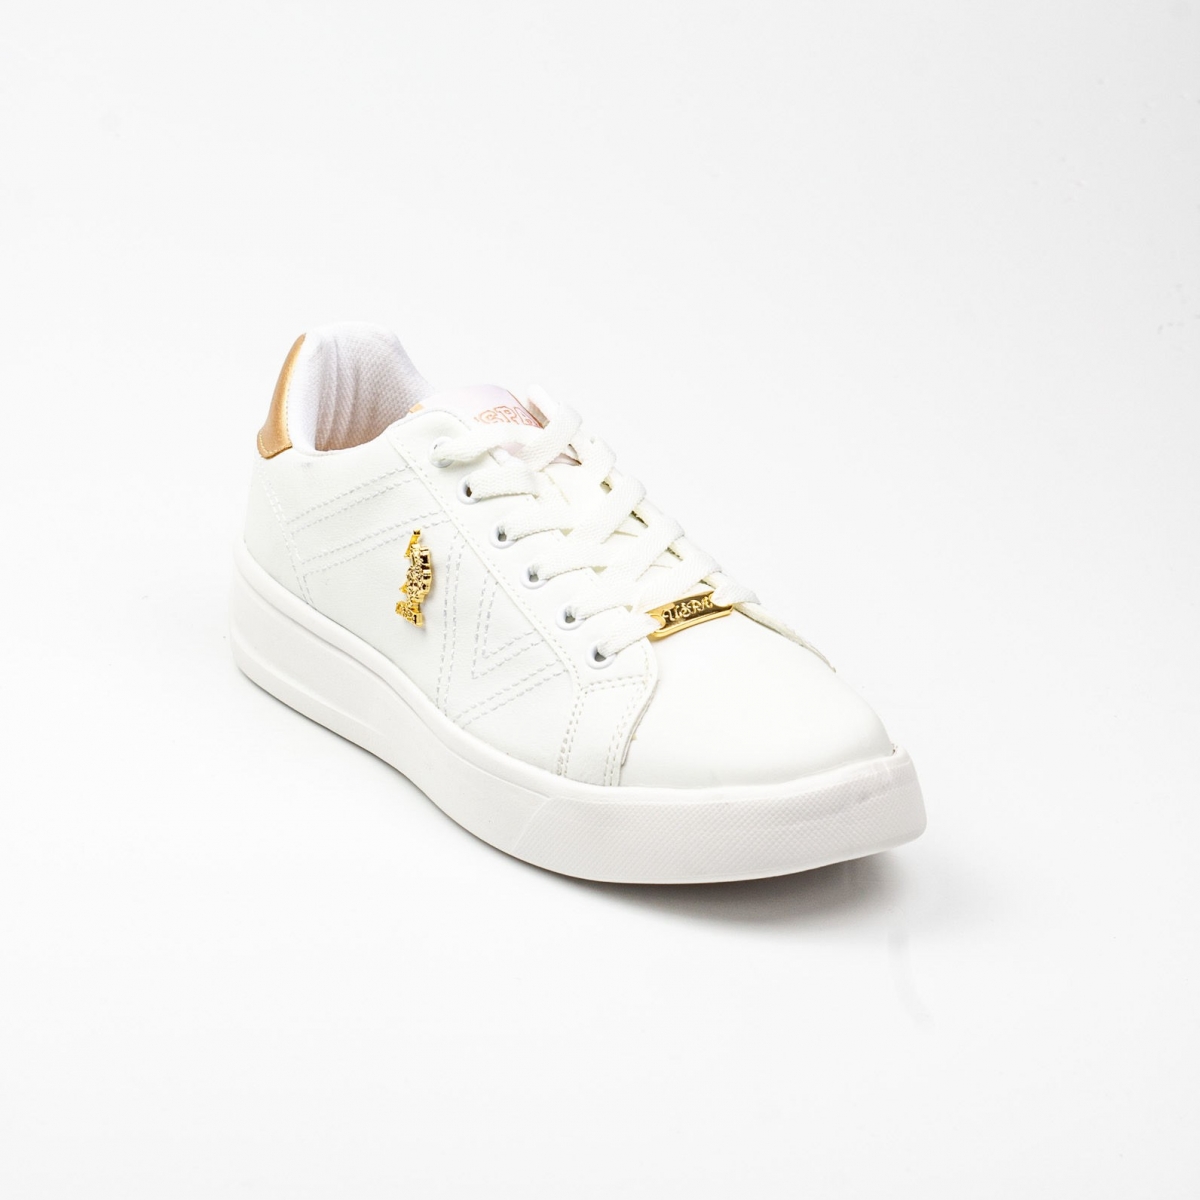 Flo Kadın Spor Ayakkabı Exxy Beyaz/White 21S040EXXY. 5